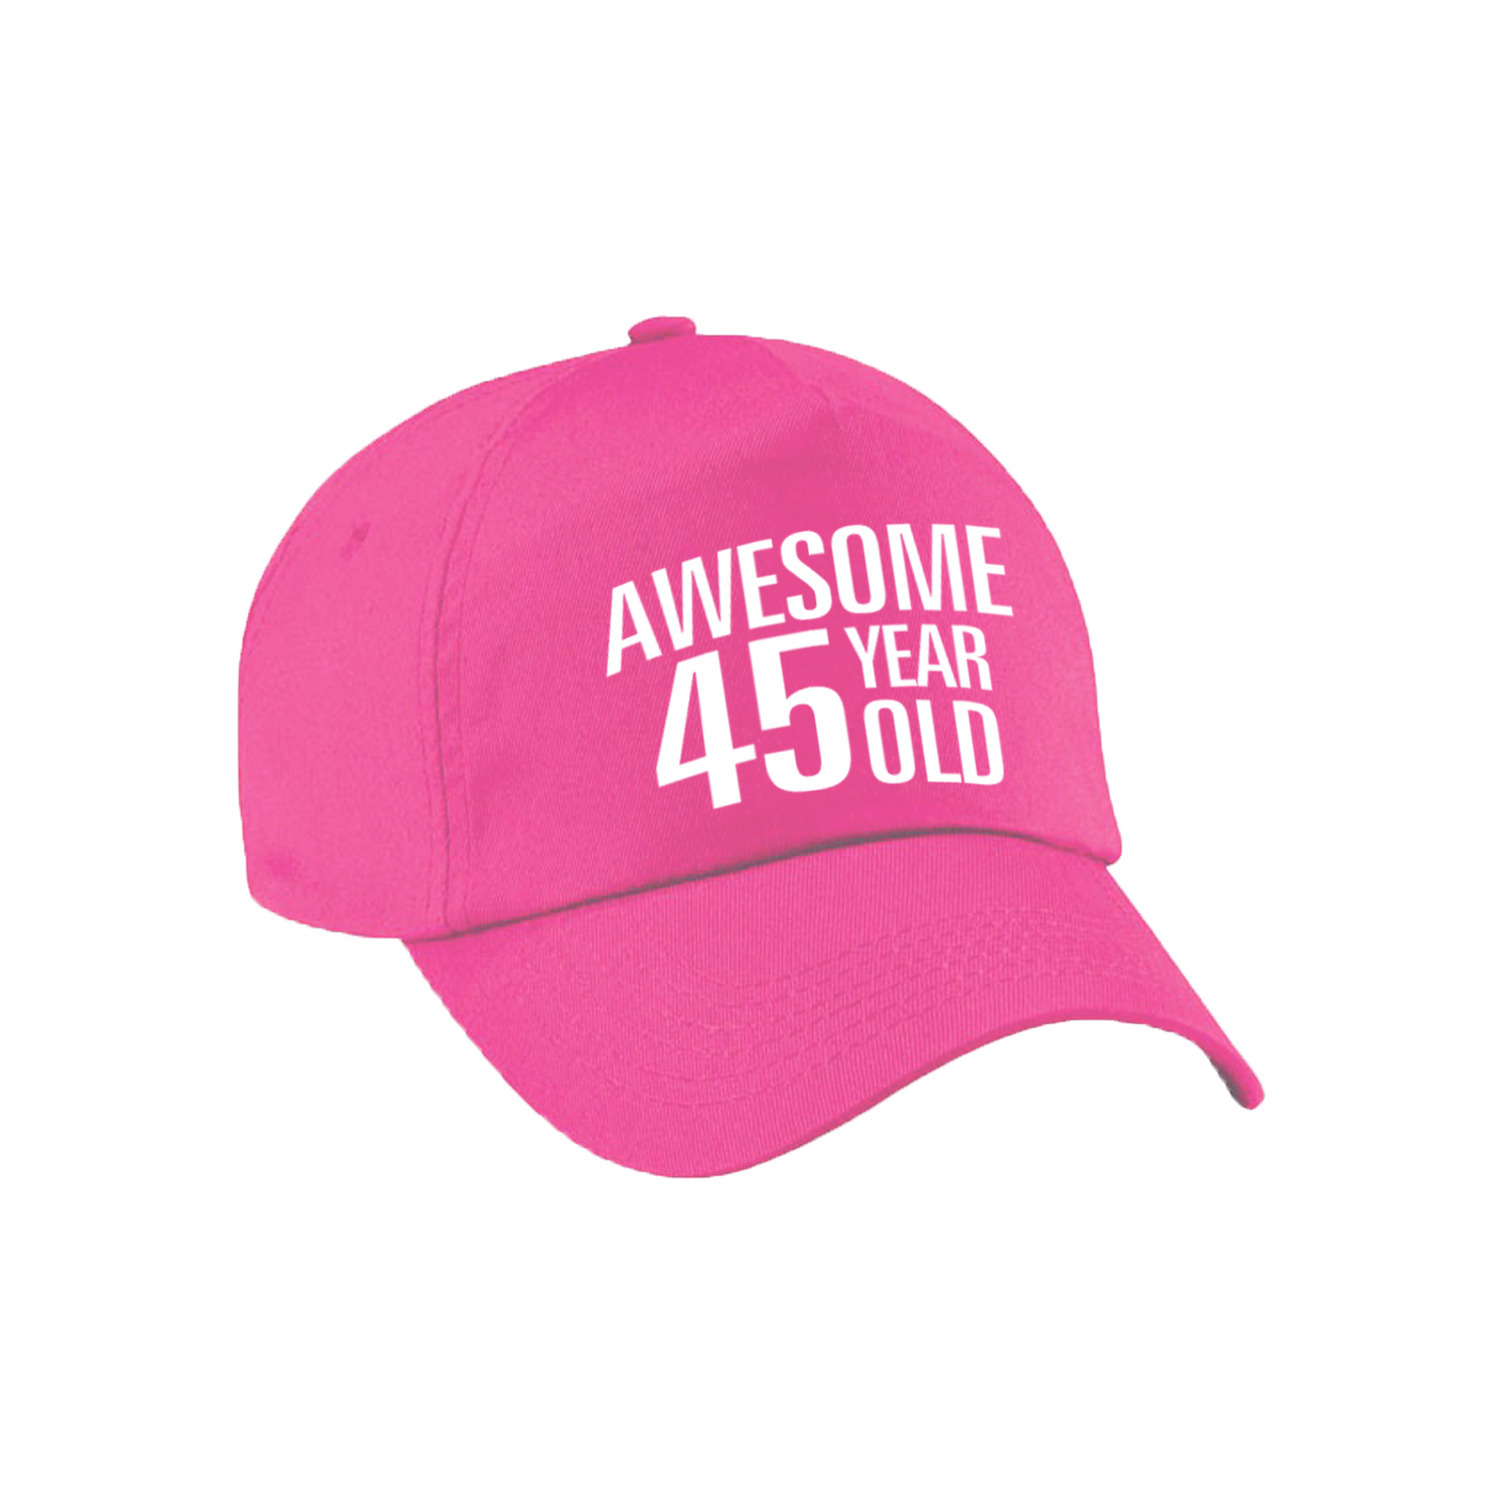 Awesome 45 year old verjaardag pet - cap roze voor dames en heren